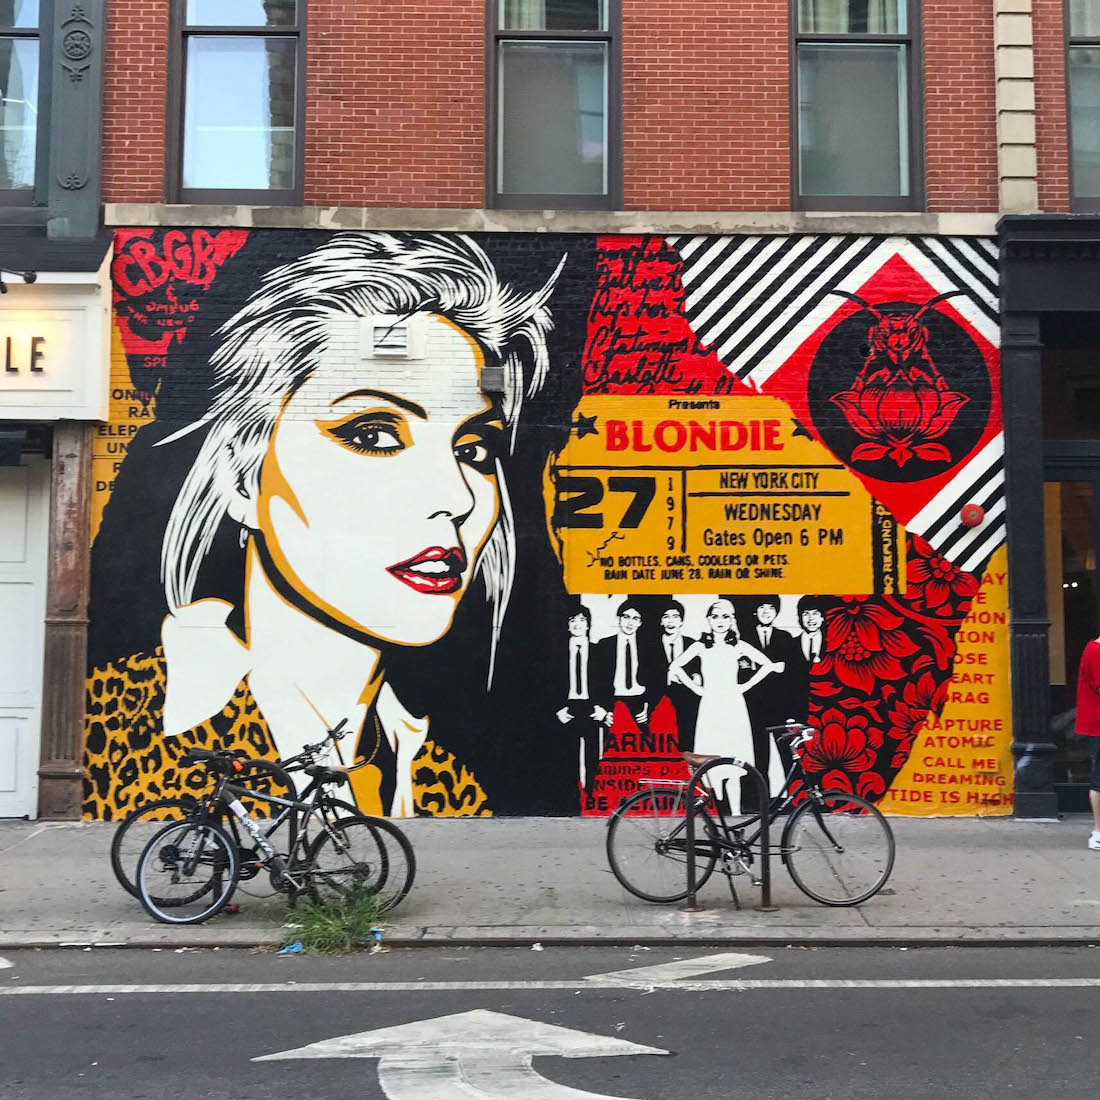 Blondie-Debbie Harry Pop Art mural by Shepard Fairey